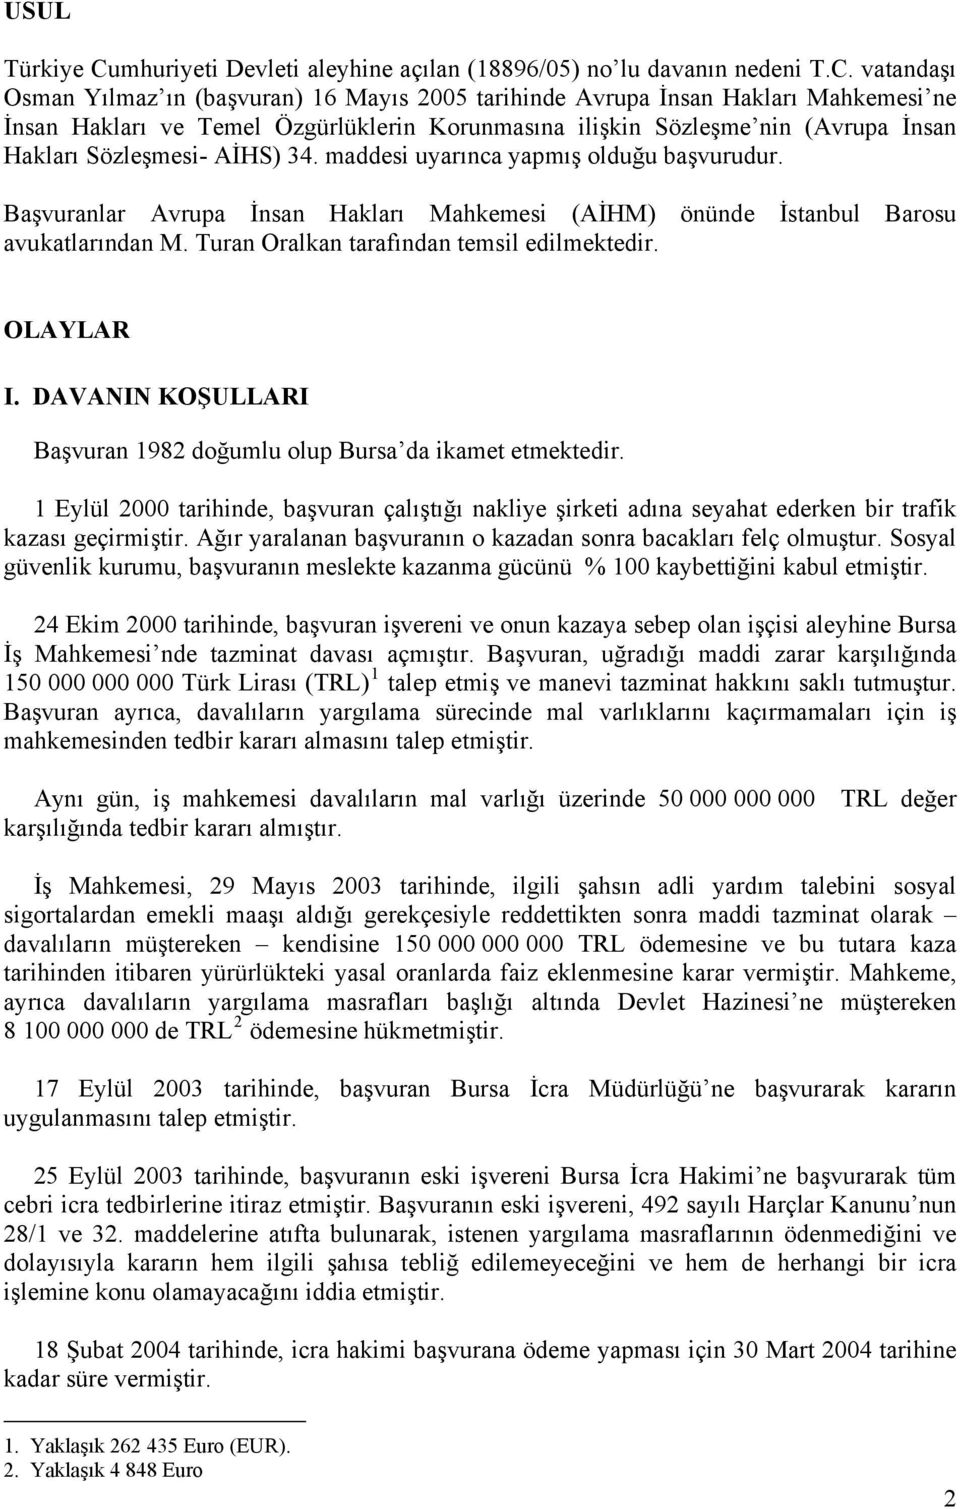 vatandaşı Osman Yılmaz ın (başvuran) 16 Mayıs 2005 tarihinde Avrupa İnsan Hakları Mahkemesi ne İnsan Hakları ve Temel Özgürlüklerin Korunmasına ilişkin Sözleşme nin (Avrupa İnsan Hakları Sözleşmesi-